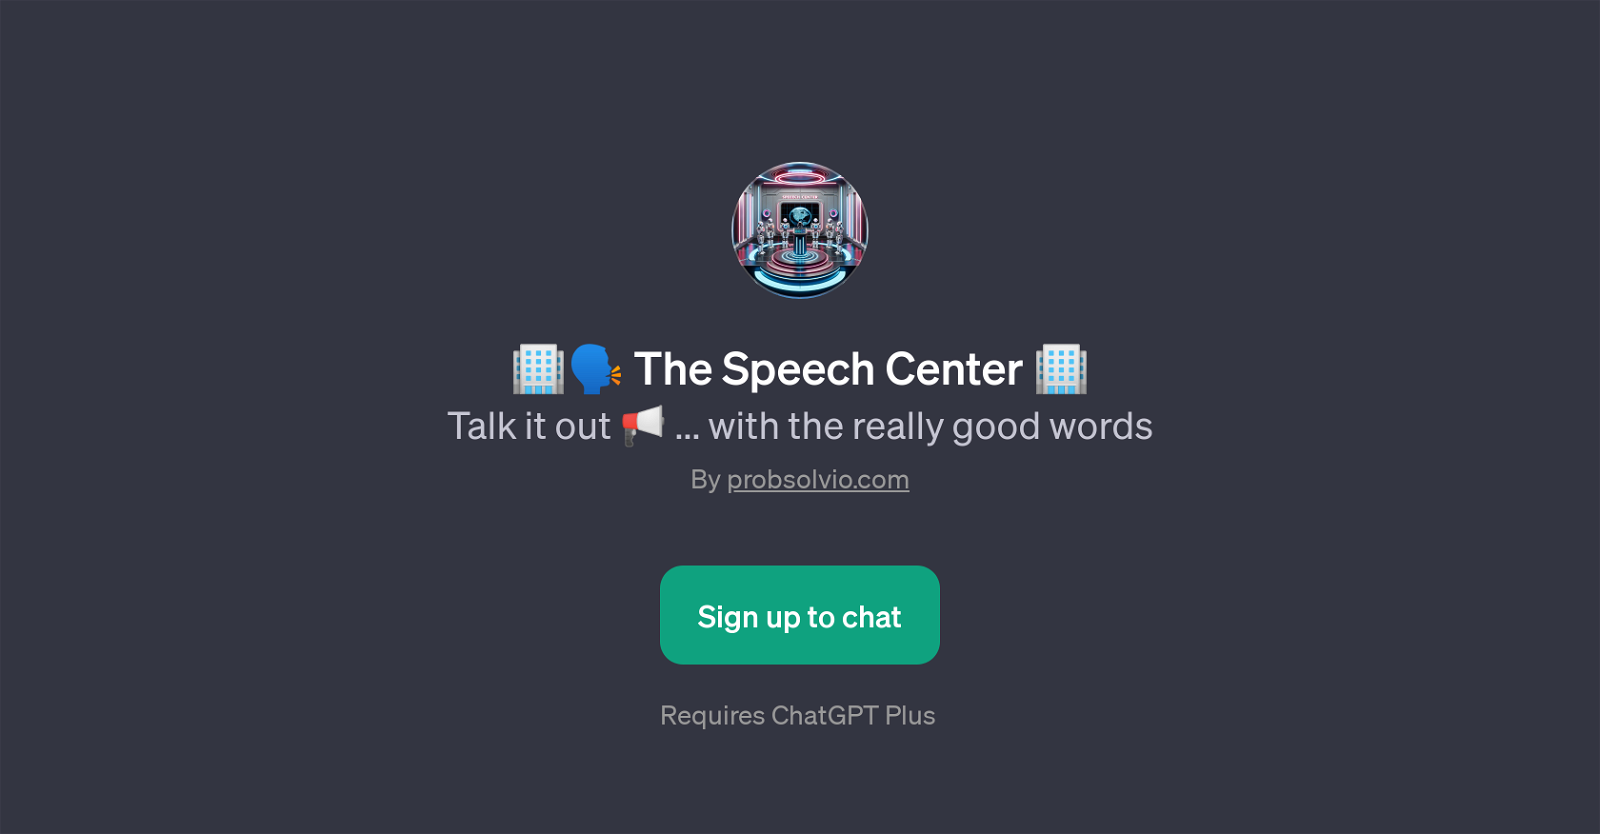 The Speech Center website